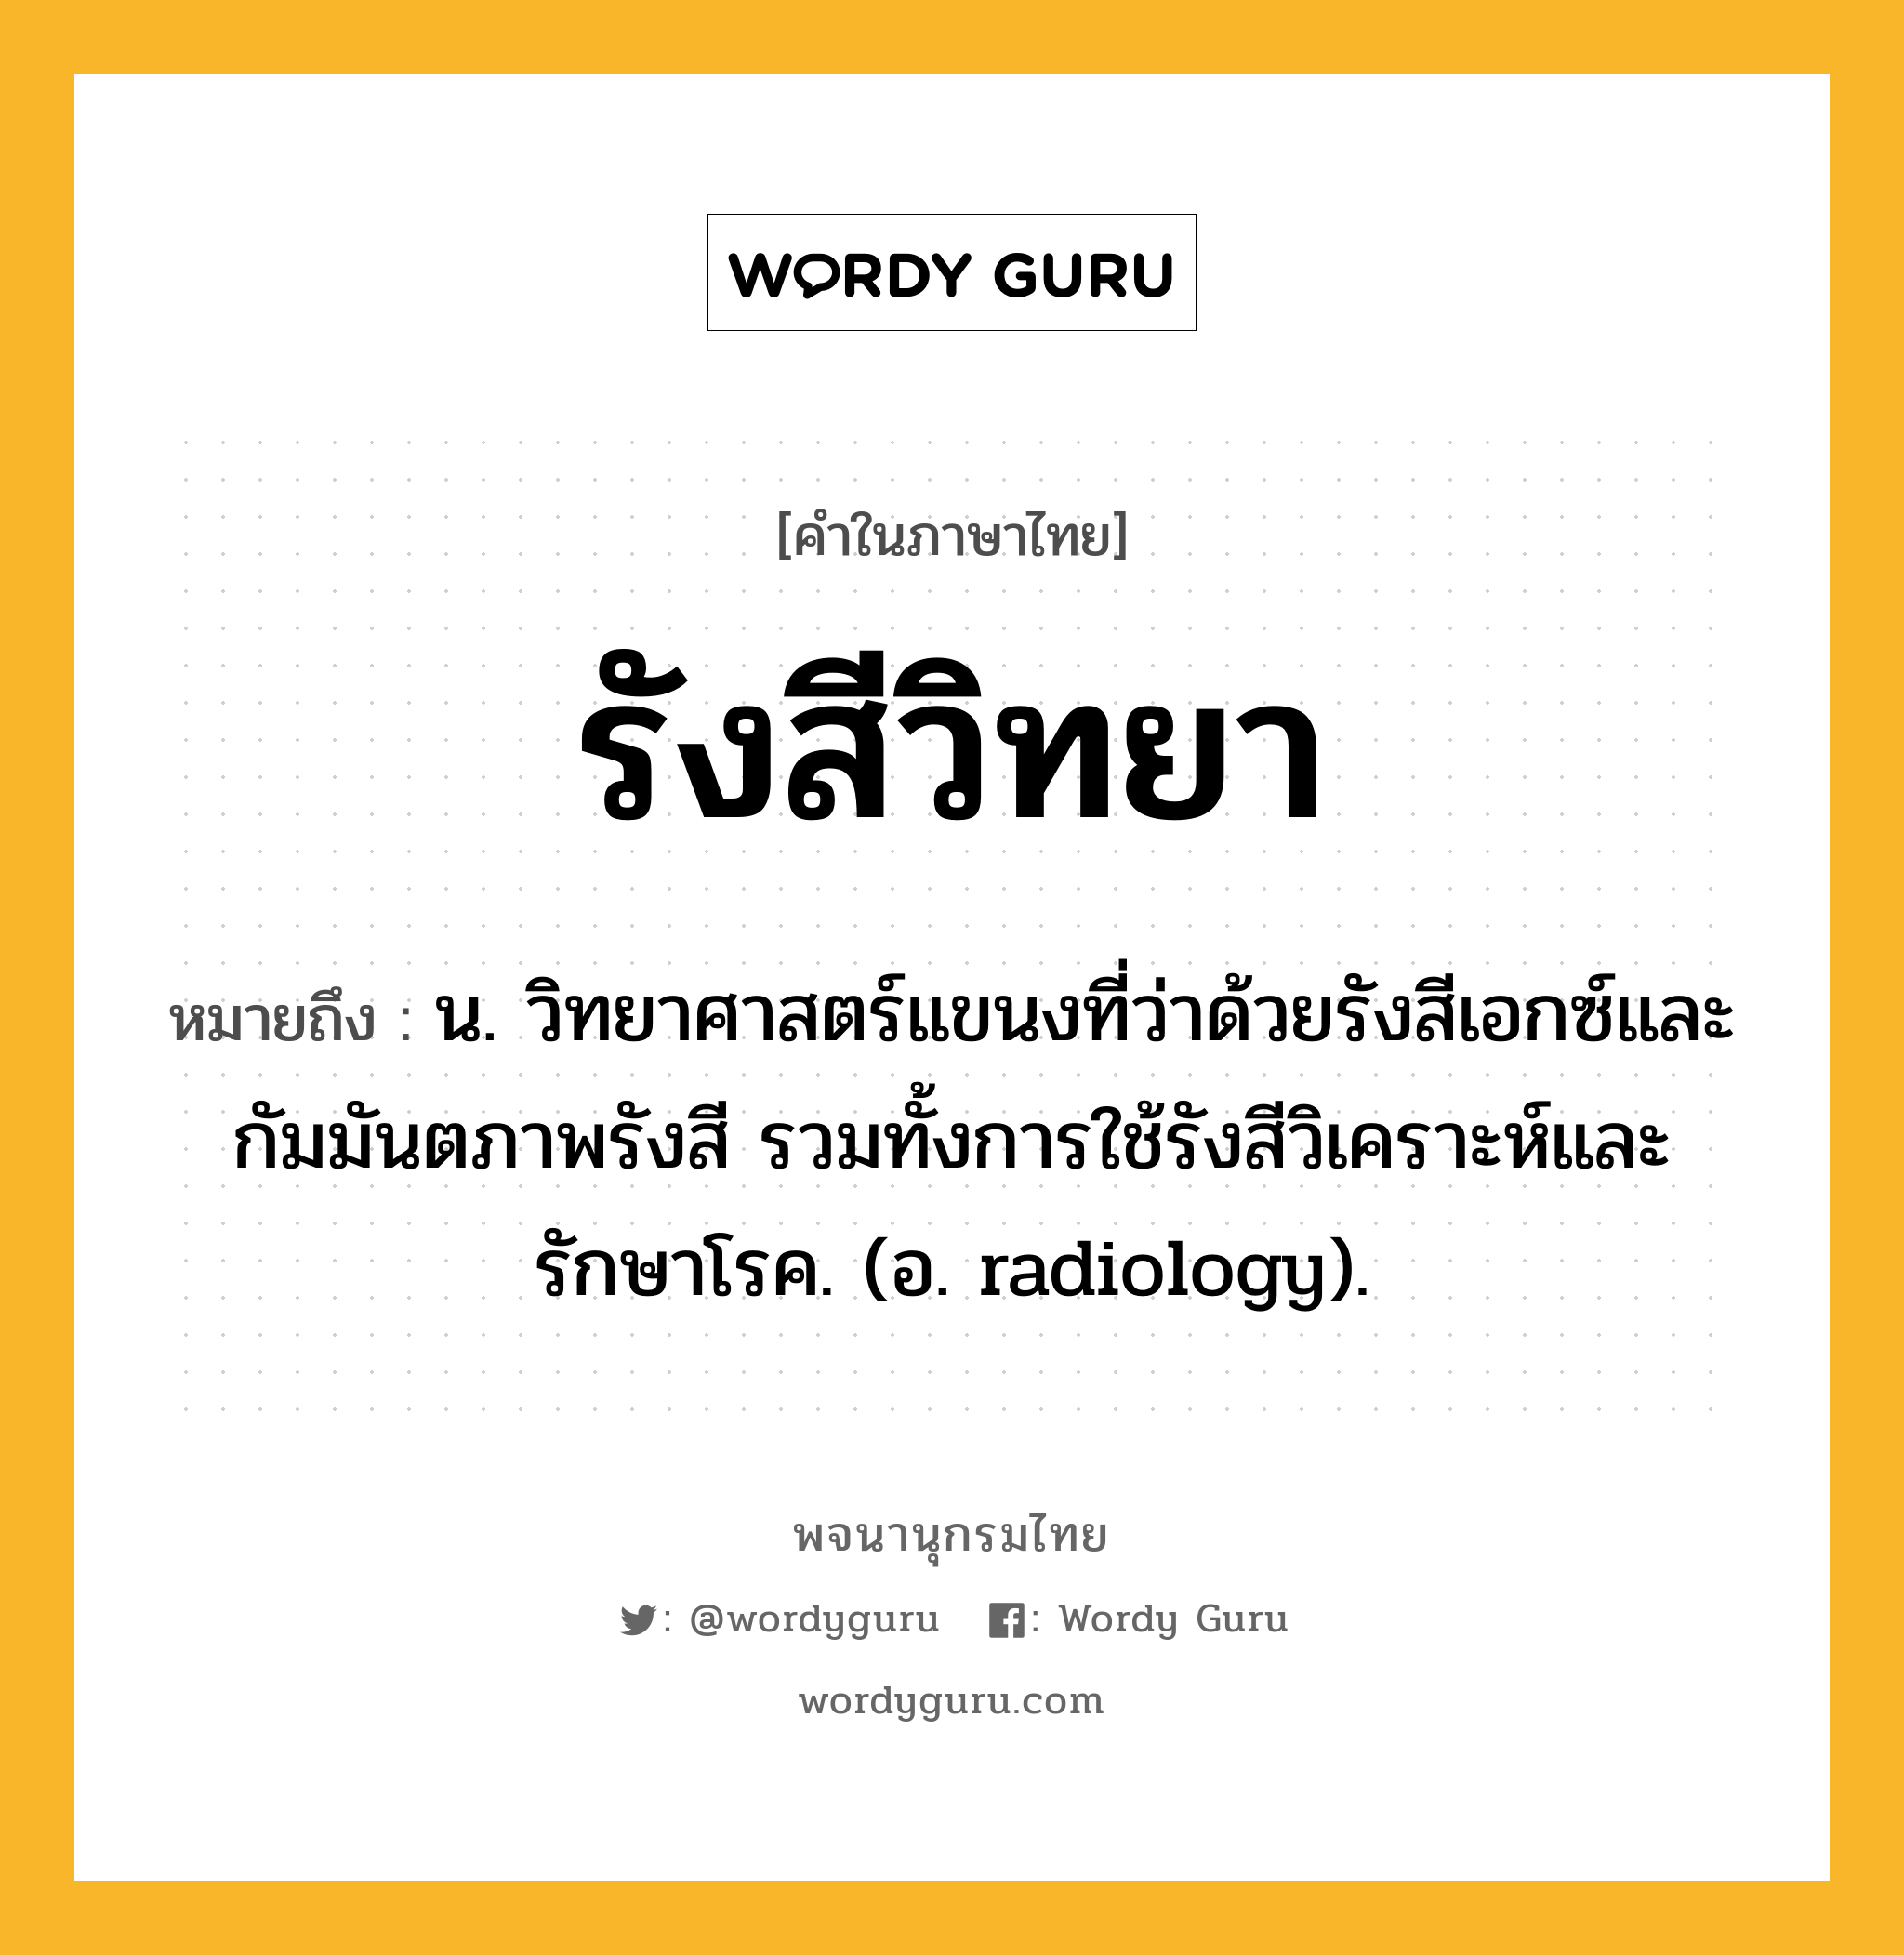 รังสีวิทยา หมายถึงอะไร?, คำในภาษาไทย รังสีวิทยา หมายถึง น. วิทยาศาสตร์แขนงที่ว่าด้วยรังสีเอกซ์และกัมมันตภาพรังสี รวมทั้งการใช้รังสีวิเคราะห์และรักษาโรค. (อ. radiology).